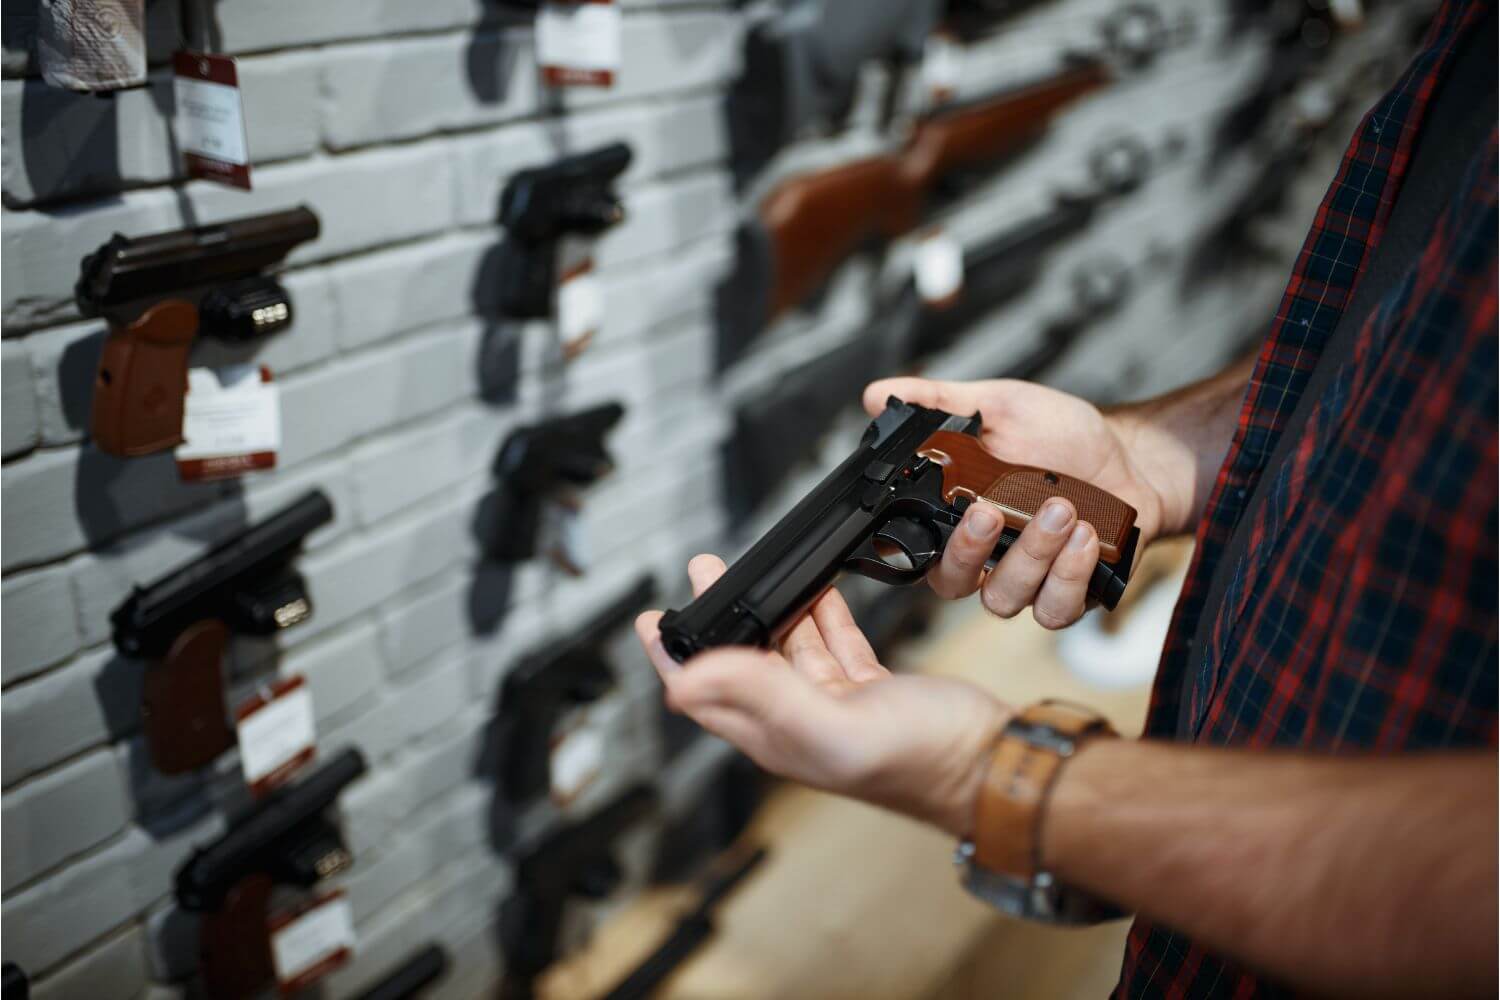 Man holding a handgun at a gun shop